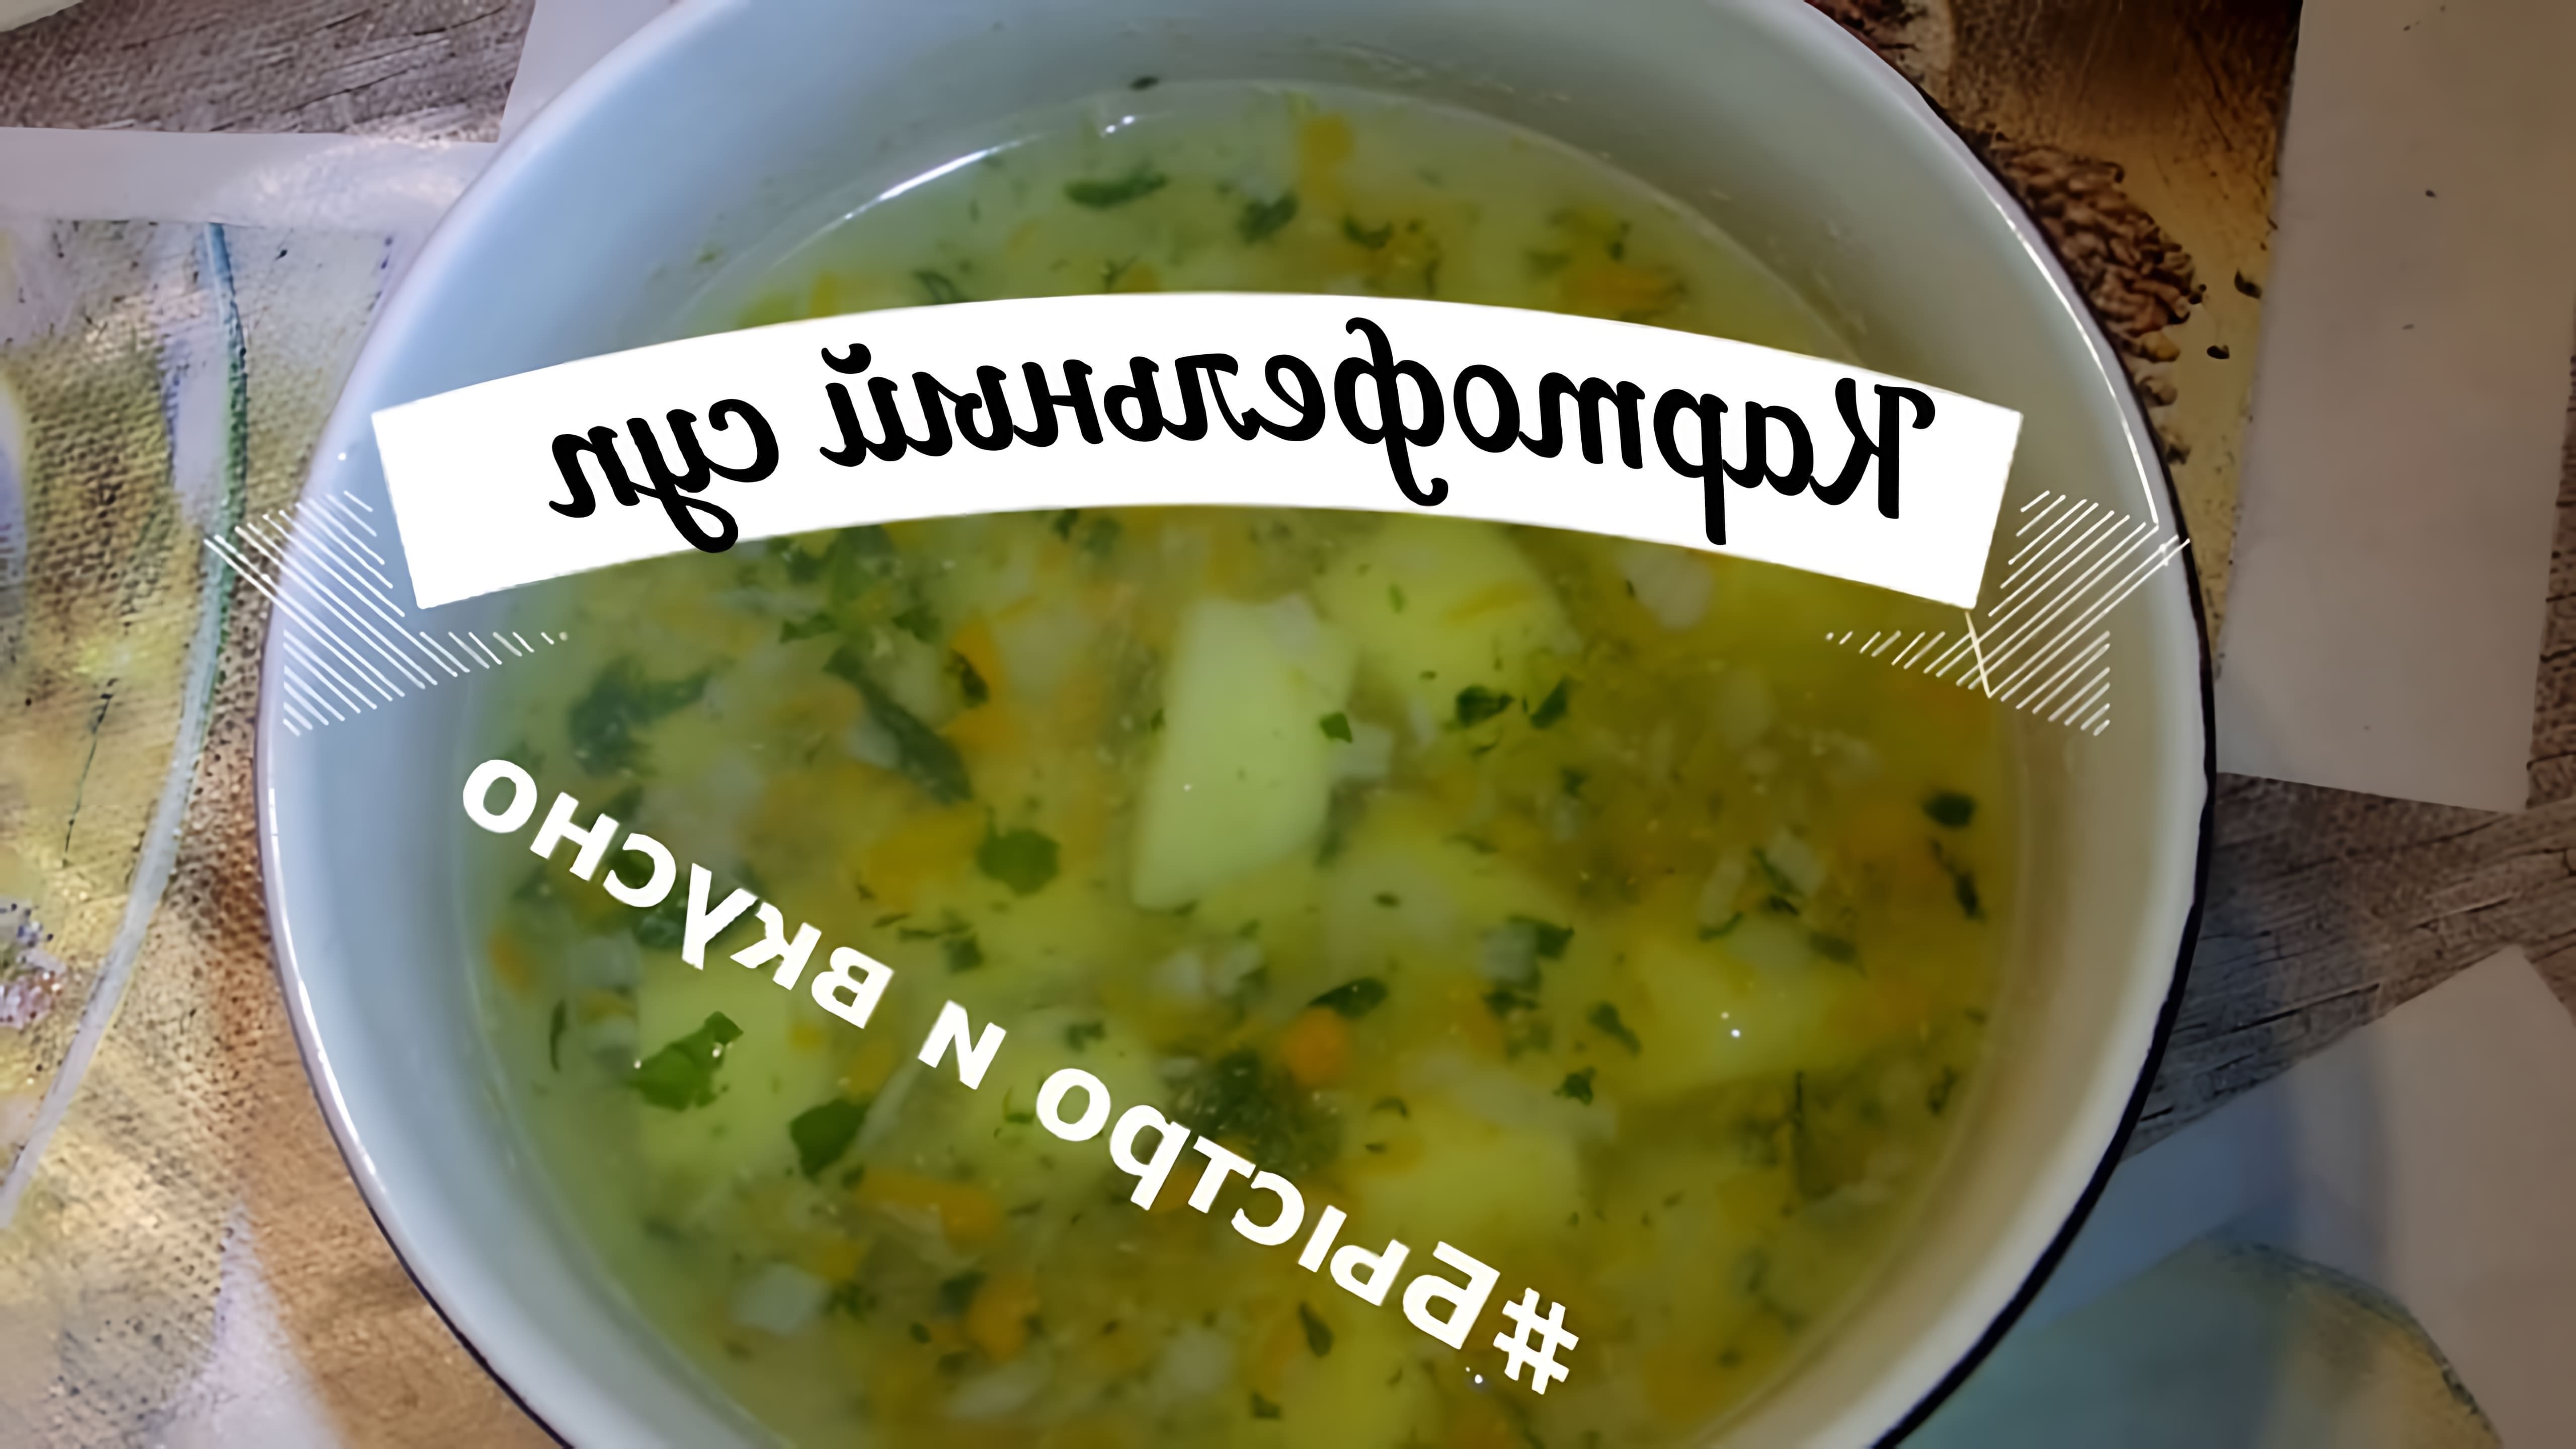 В этом видео демонстрируется процесс приготовления картофельного супа